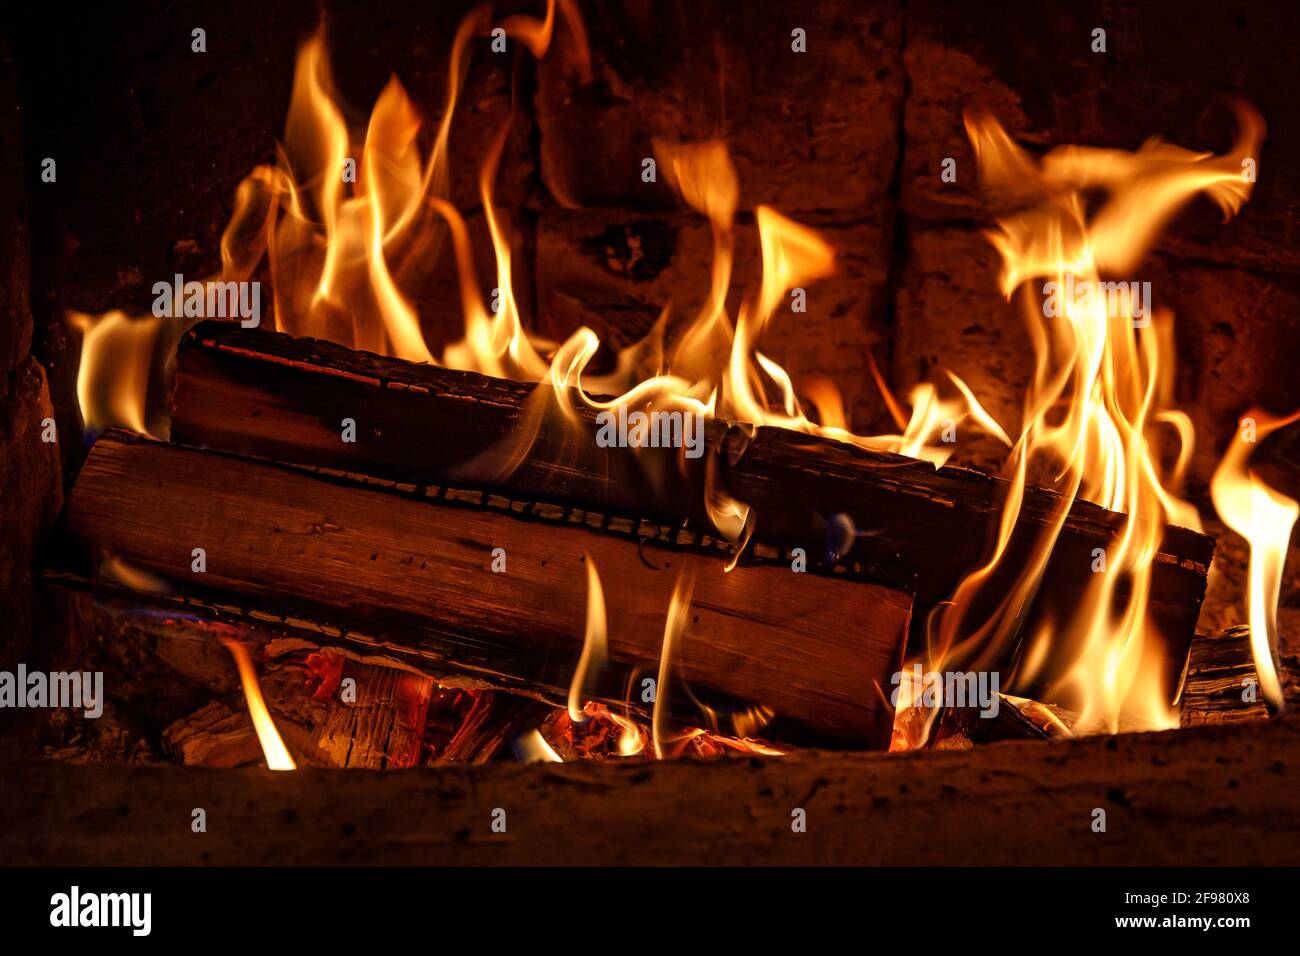 Brennholz in der Kamin-Nahaufnahme, glühende Protokolle, Feuer und Flammen  brennen Stockfotografie - Alamy